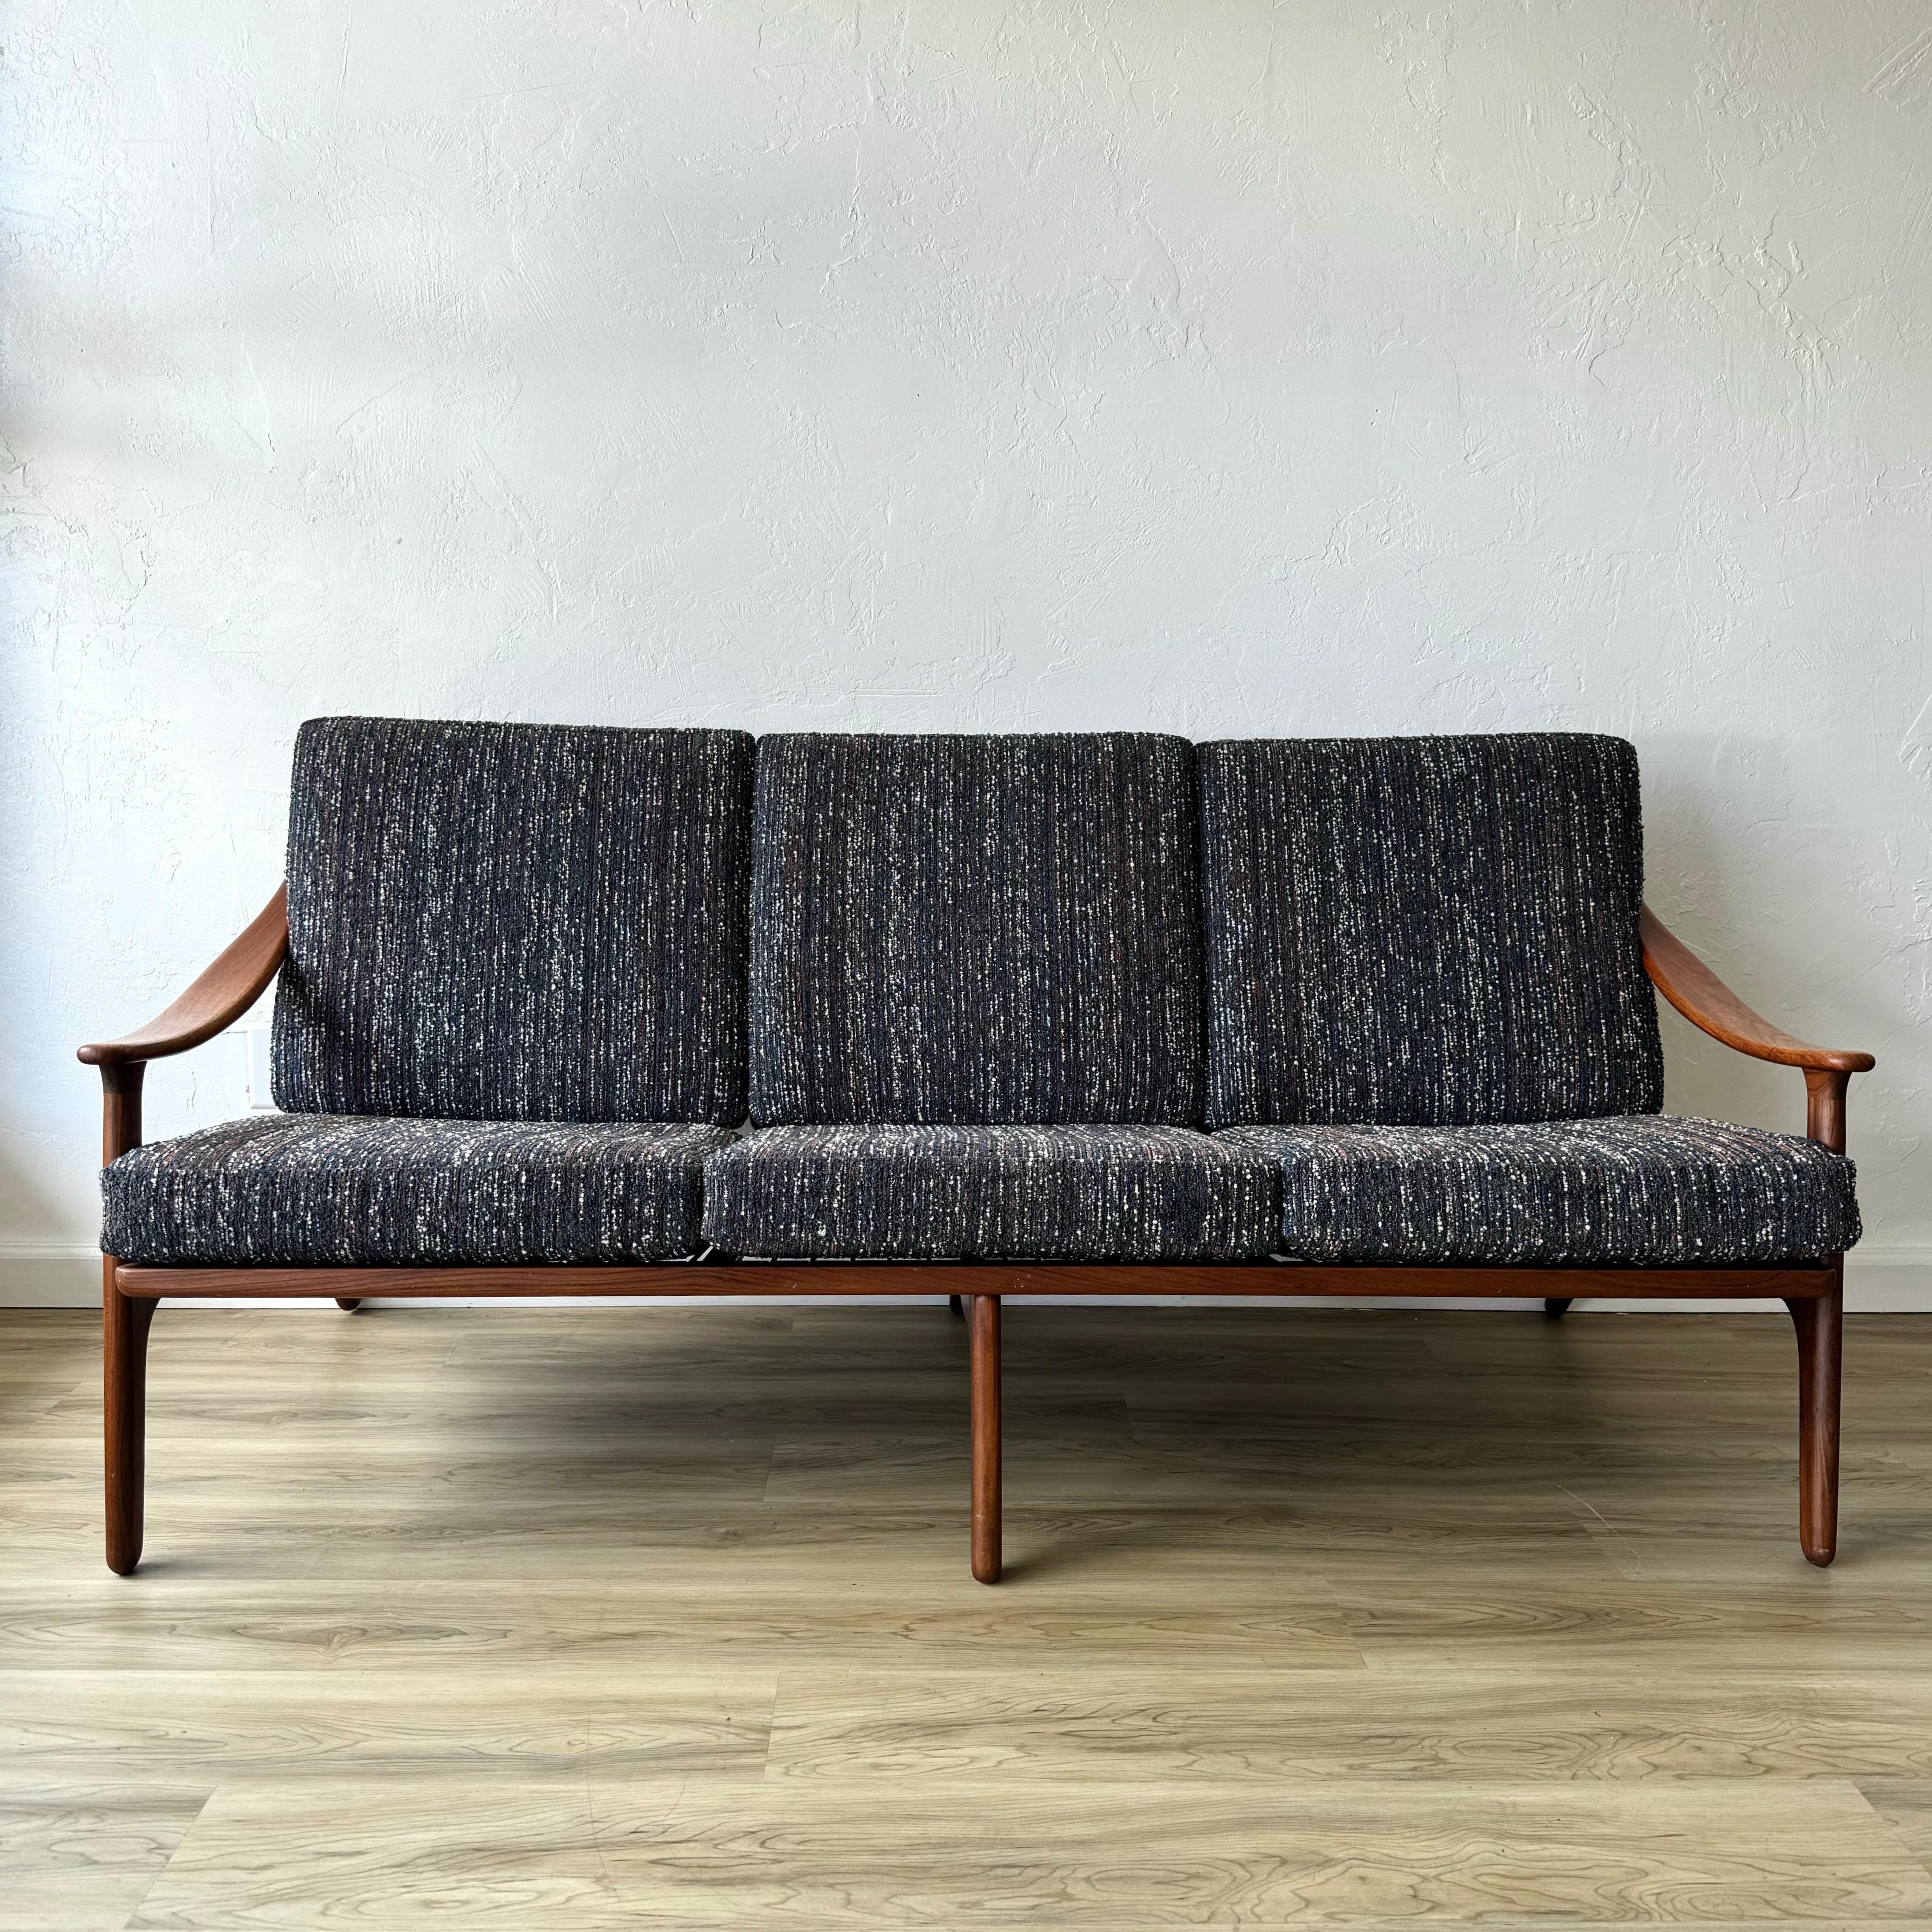 Canapé sculptural en teck finement restauré par le designer Arne Hovmand/One pour Komfort. Fabriqué au Danemark à la fin des années 50 ou au début des années 60. Il a été entièrement nettoyé, huilé et de nouveaux coussins ont été confectionnés avec